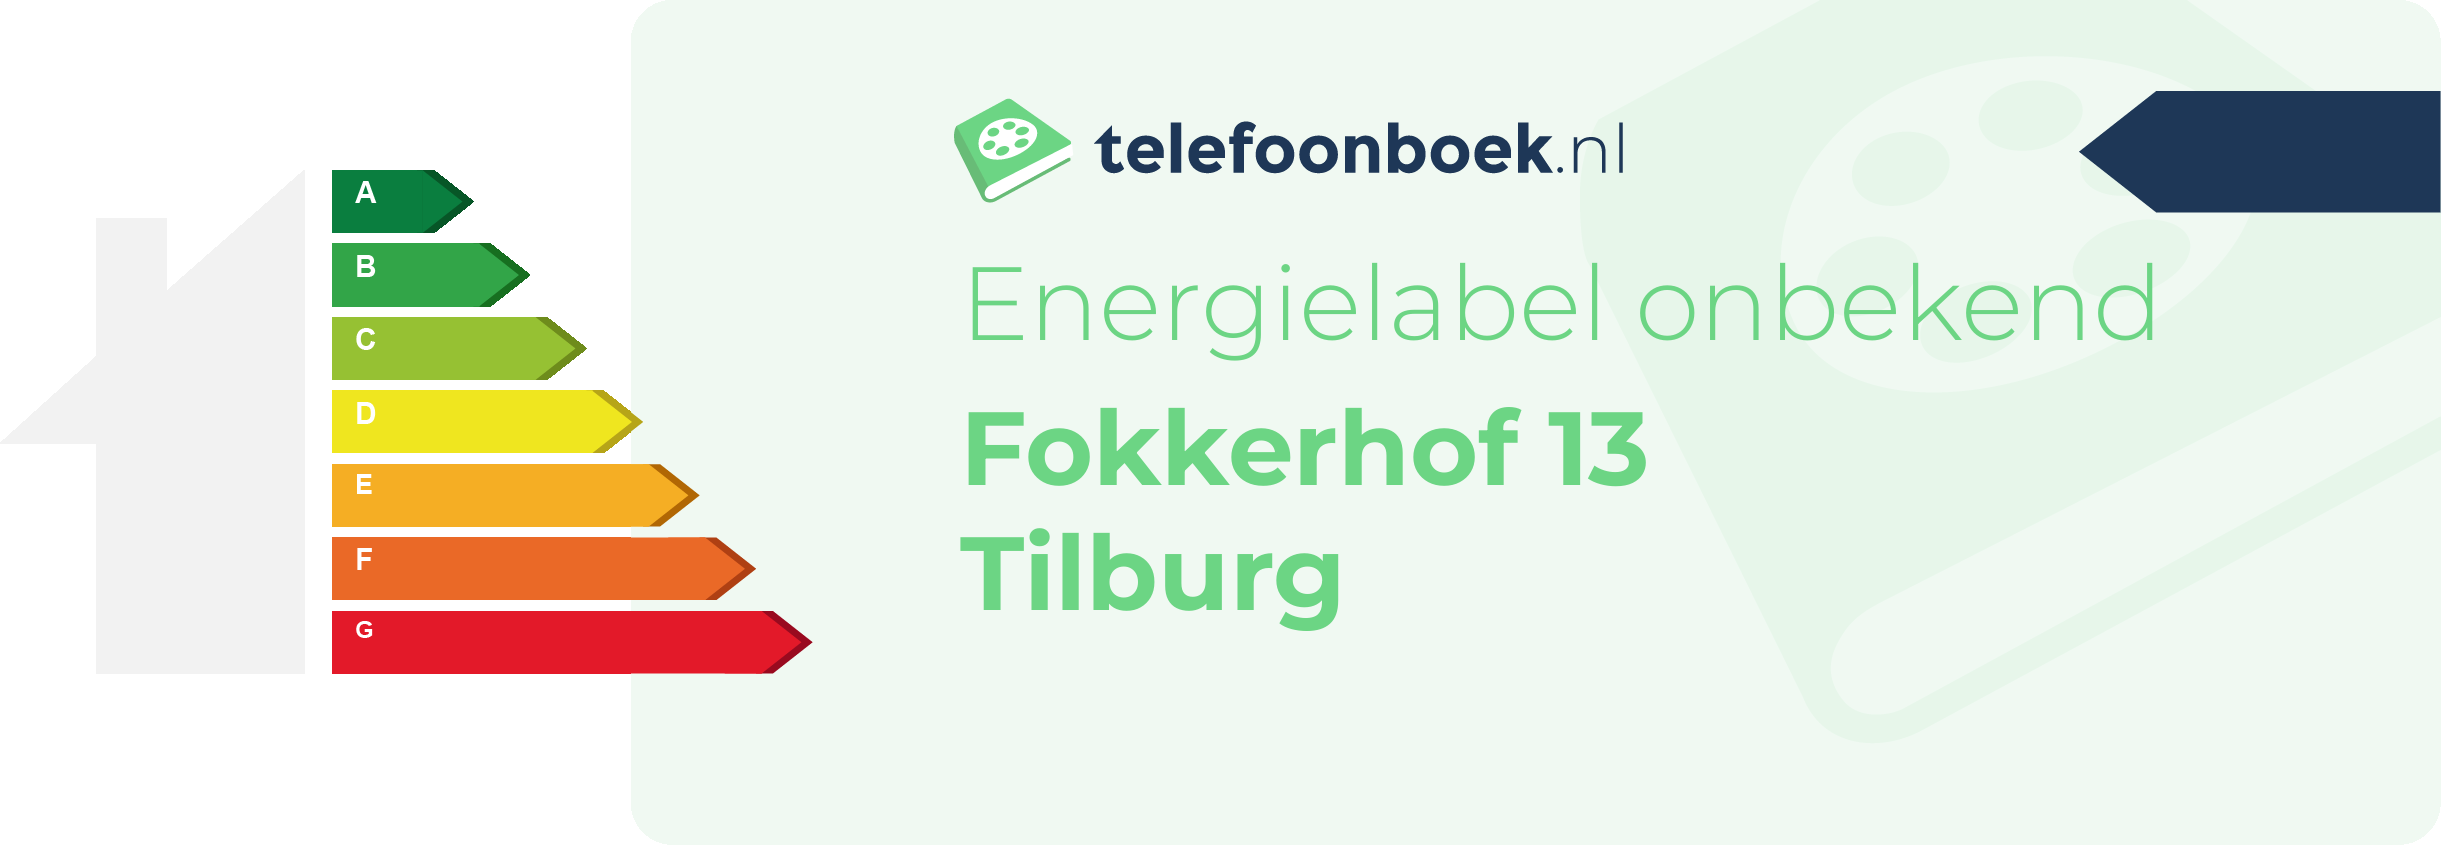 Energielabel Fokkerhof 13 Tilburg